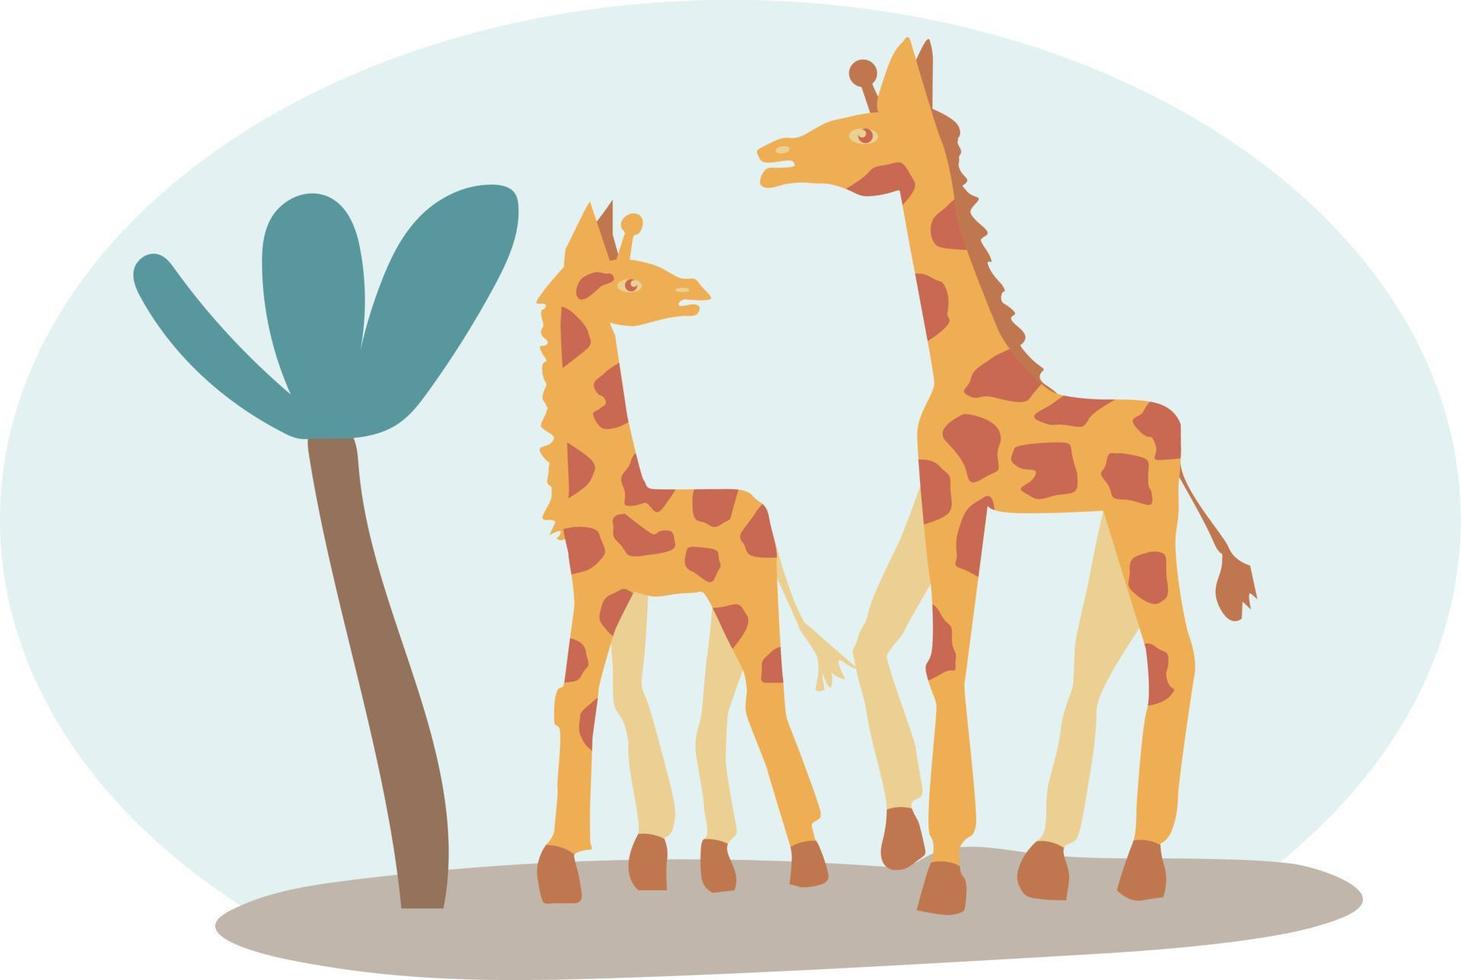 cartaz com animais fofos. girafa estilizada mãe e filho caminhando juntos vetor